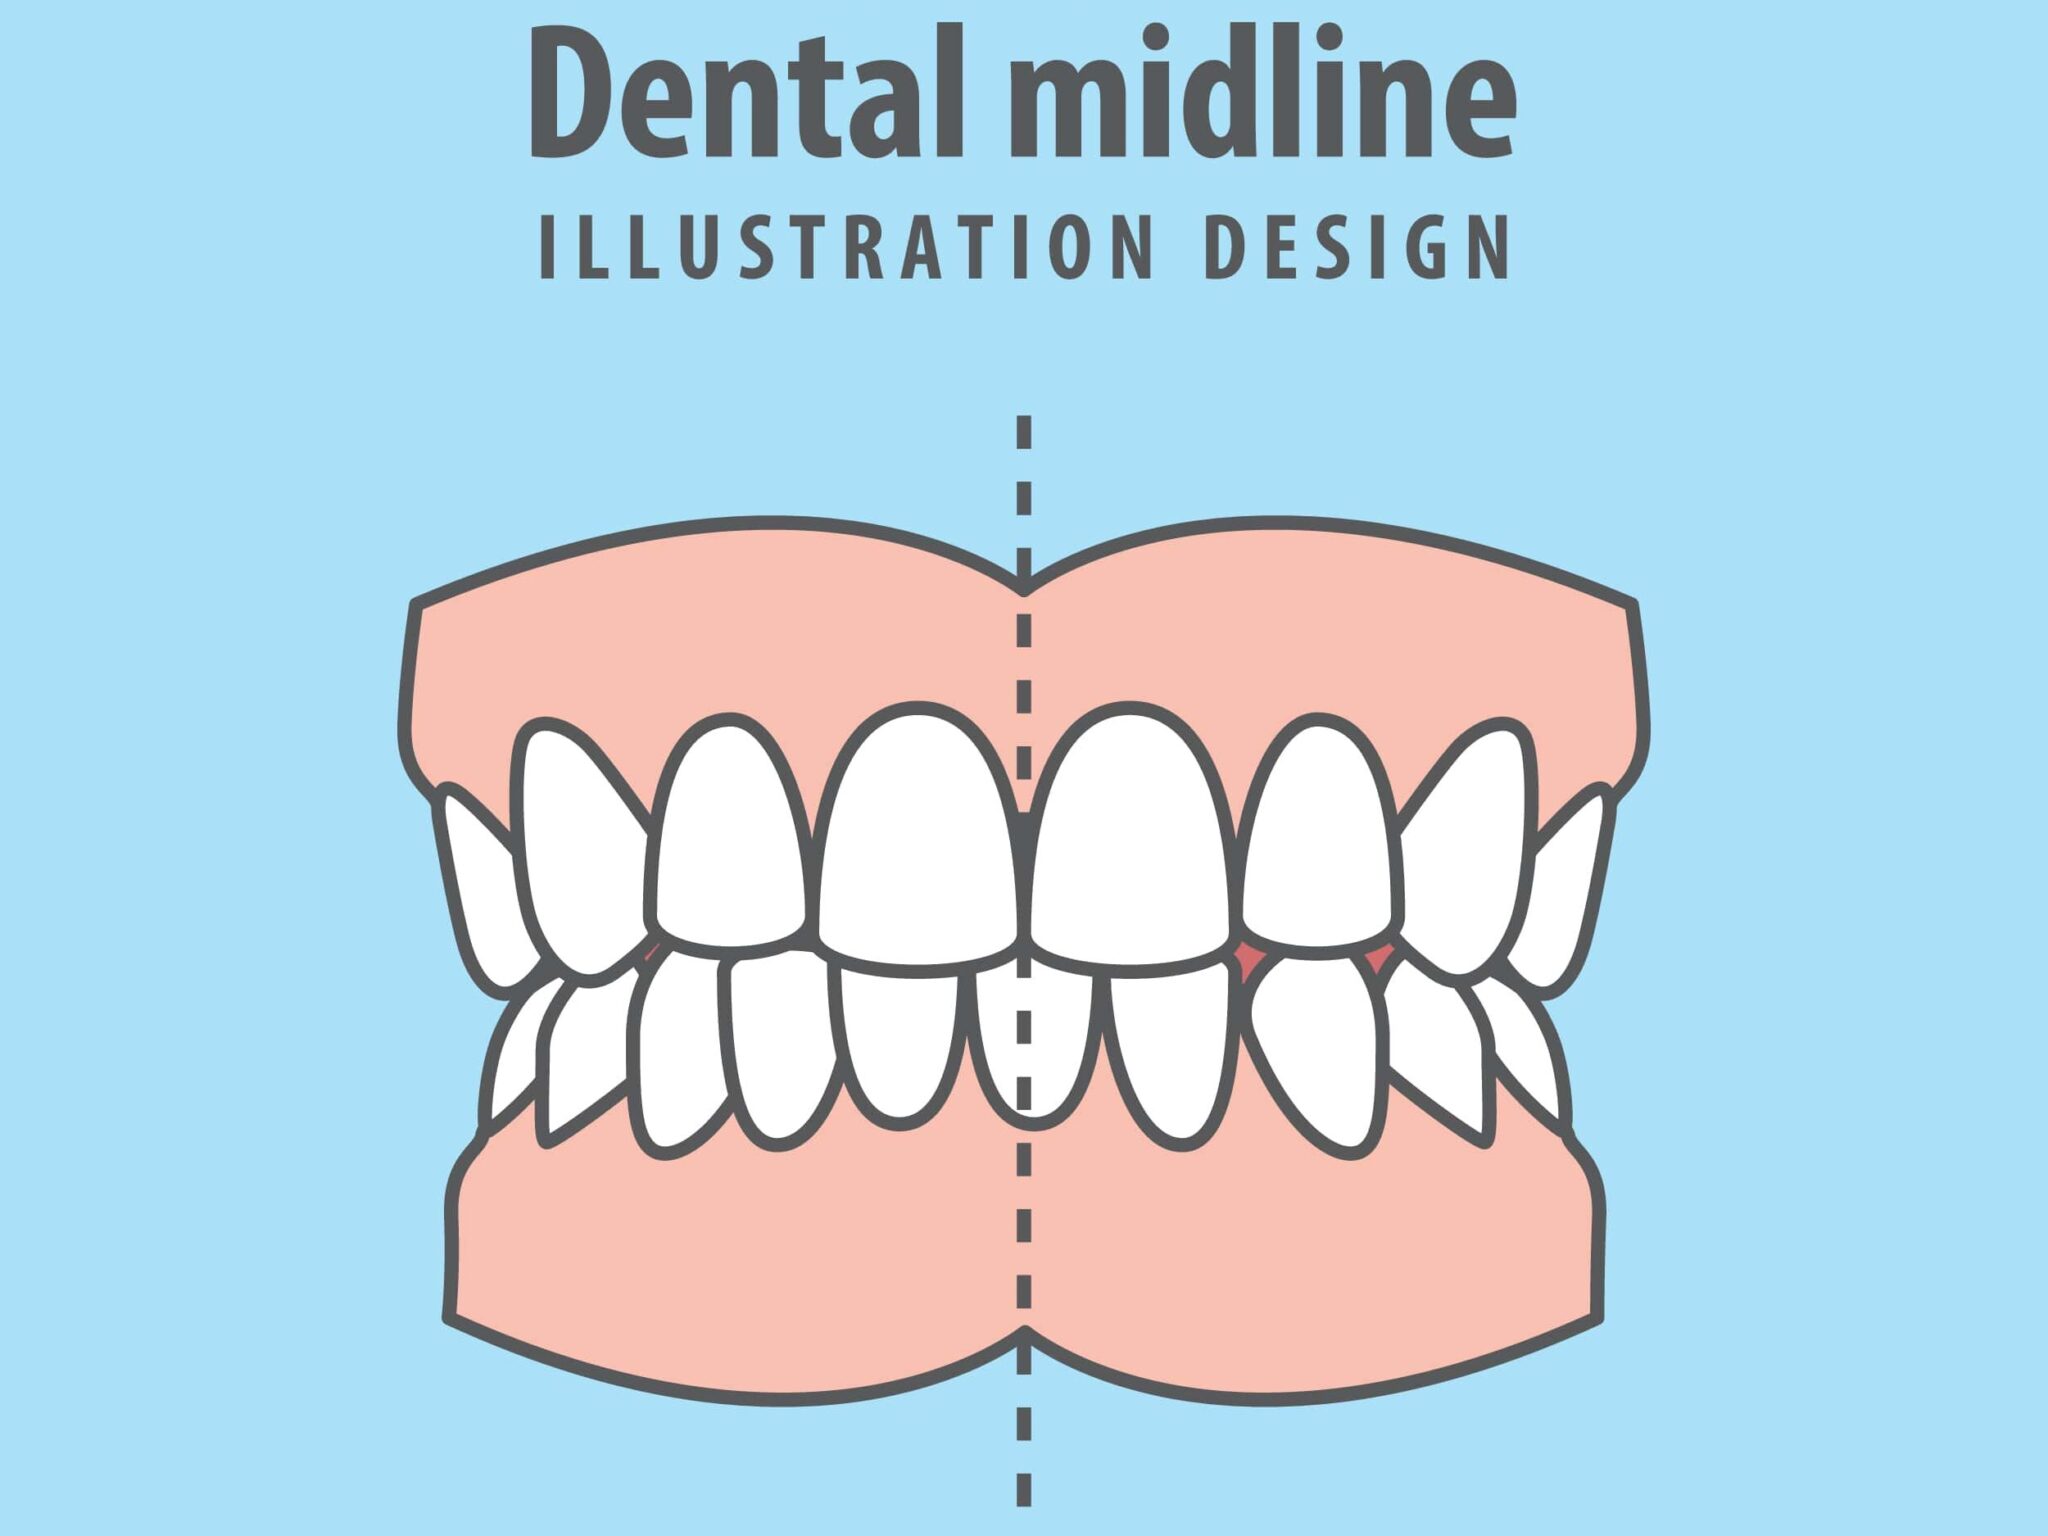 Dental midline